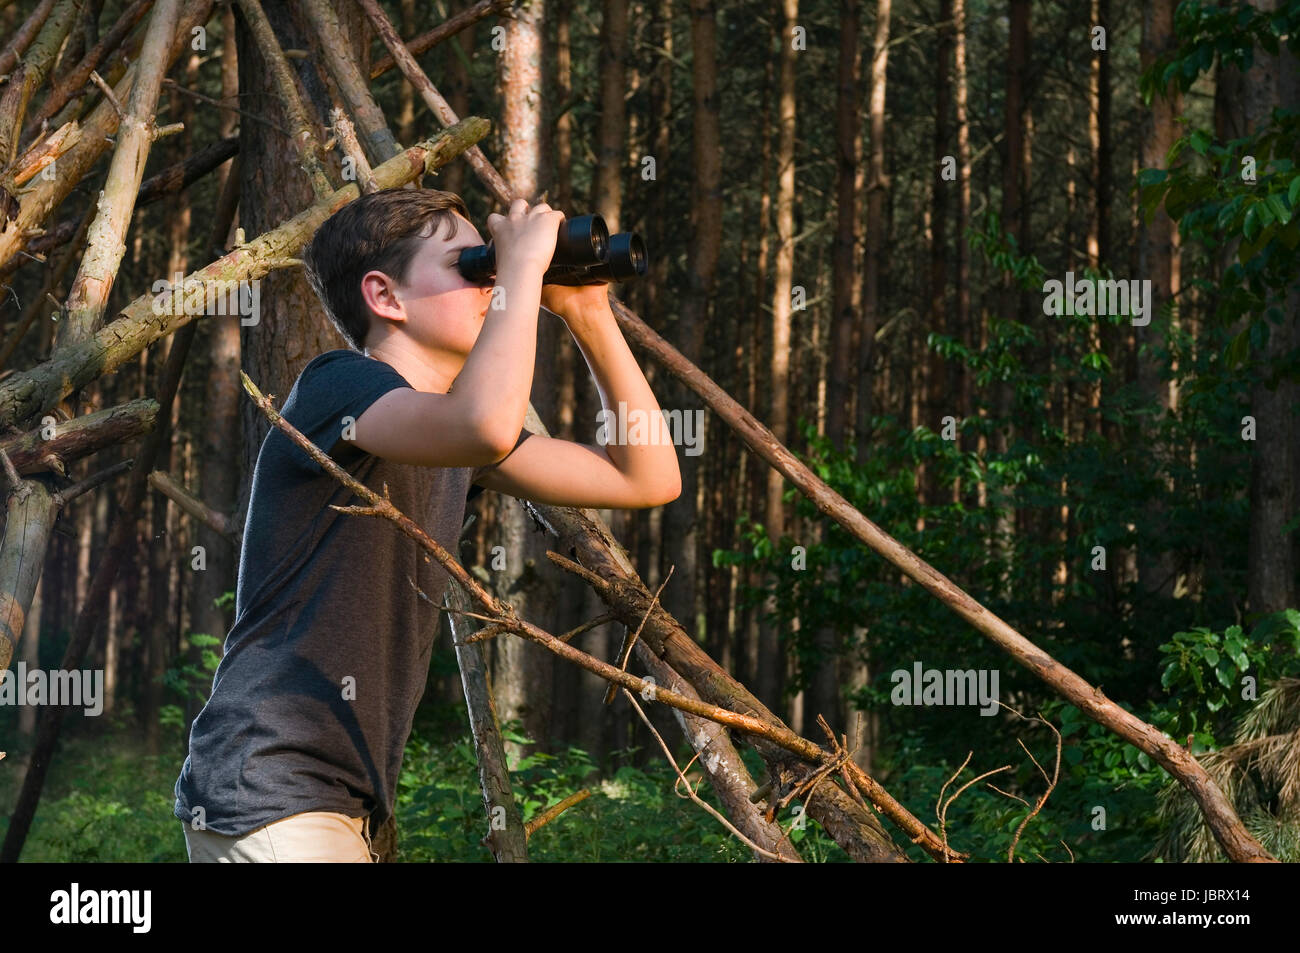 Seitliche Oberkörper-Ansicht eines 13jährigen männlichen adolescenti im Wald durch ein Fernglas schauend Foto Stock